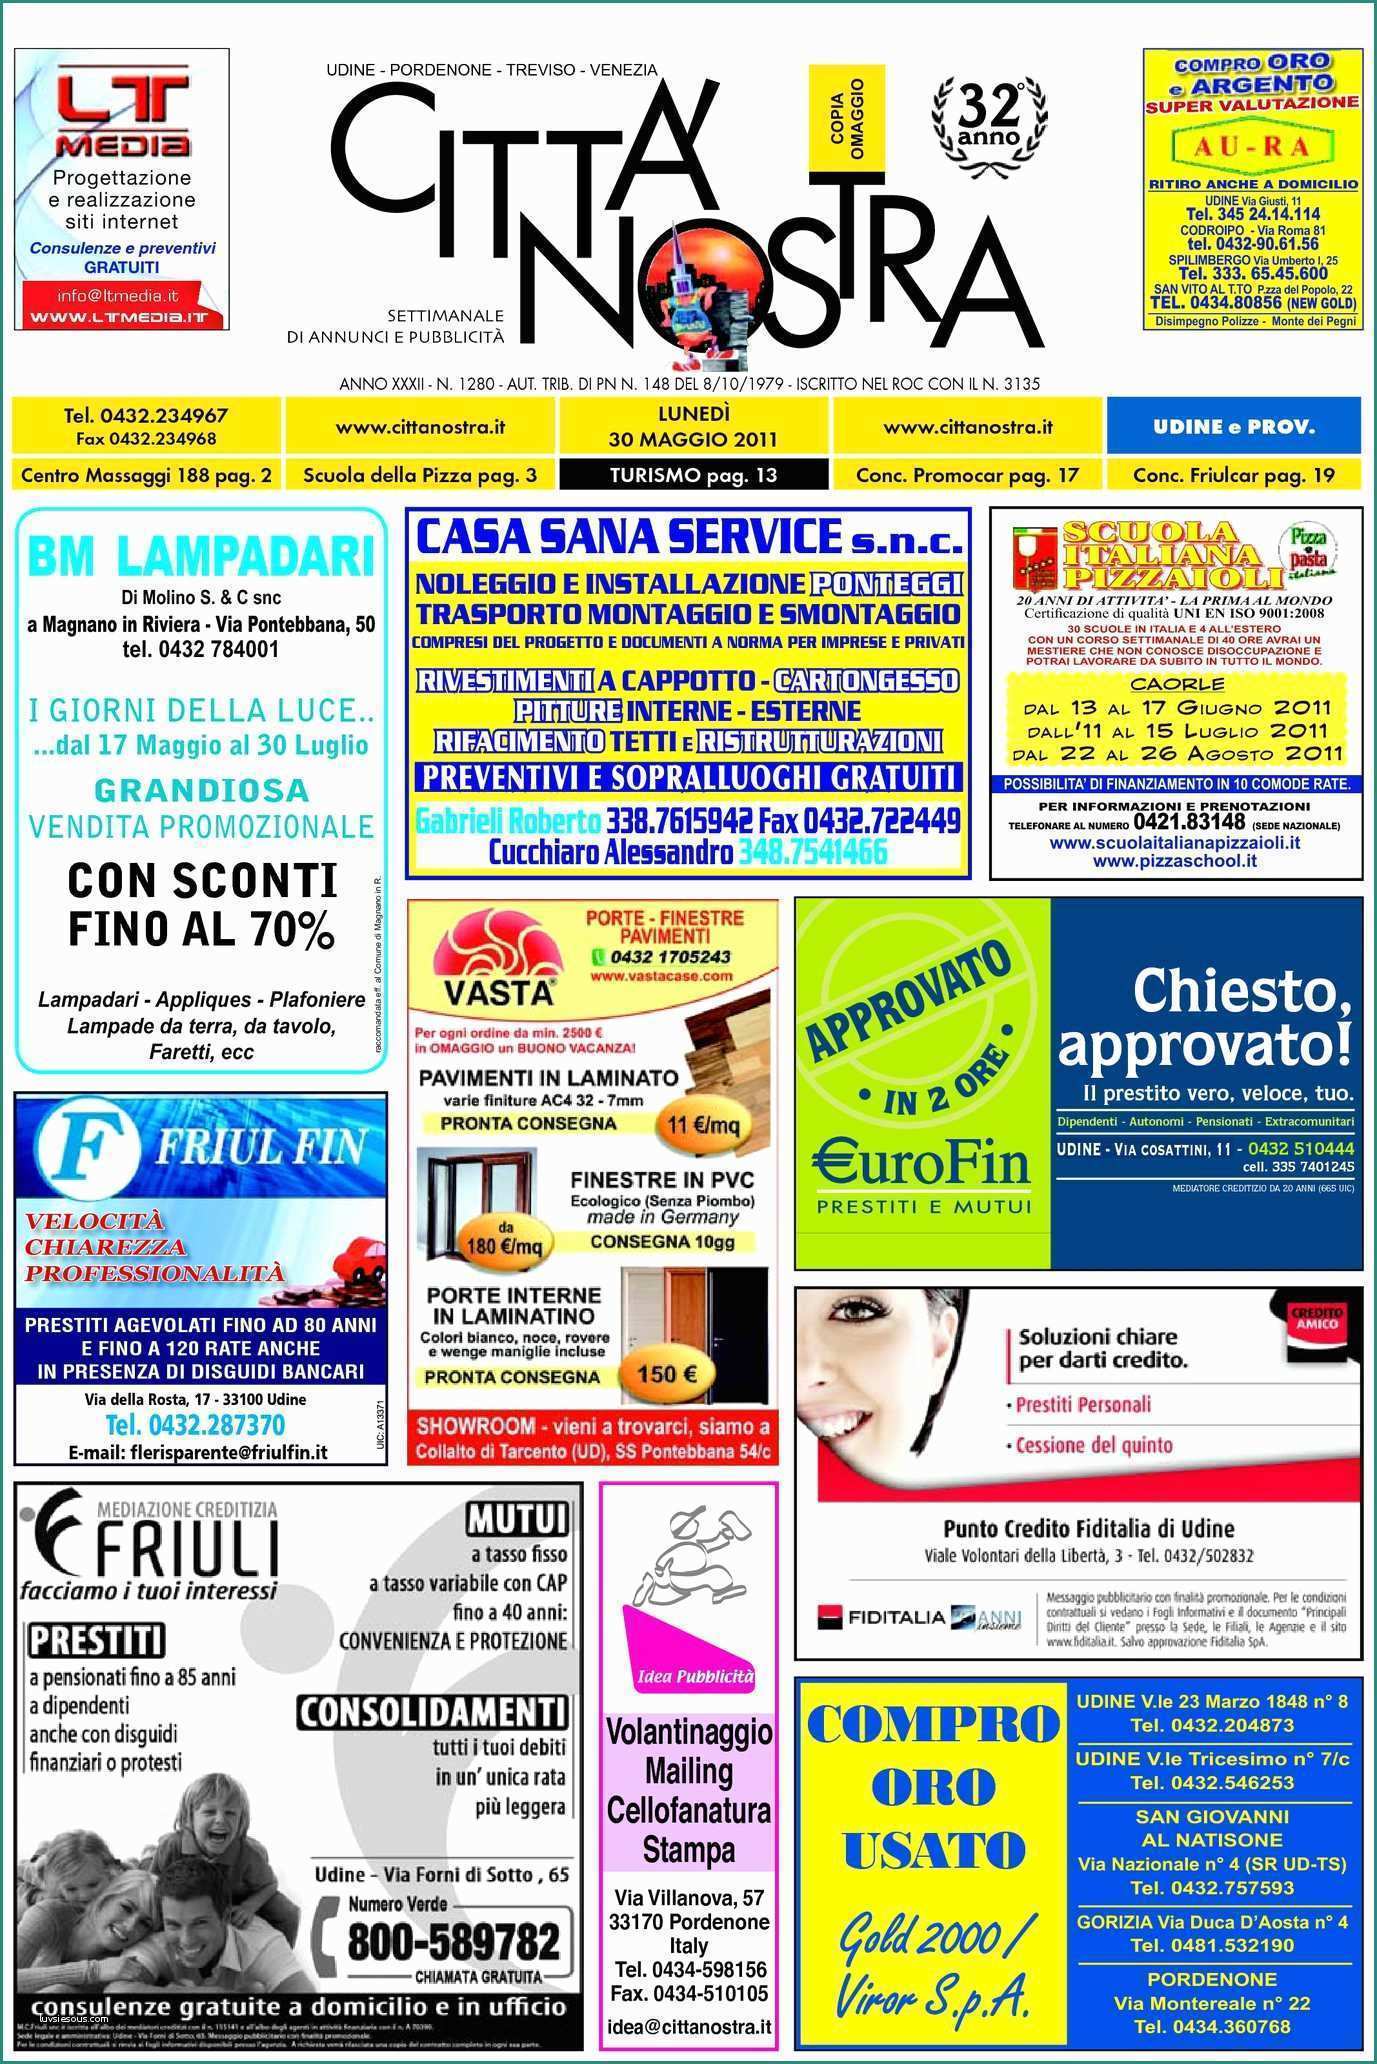 Ascensore Per Disabili Dimensioni E Calaméo Citt  Nostra Udine Del 30 05 2011 N 1280